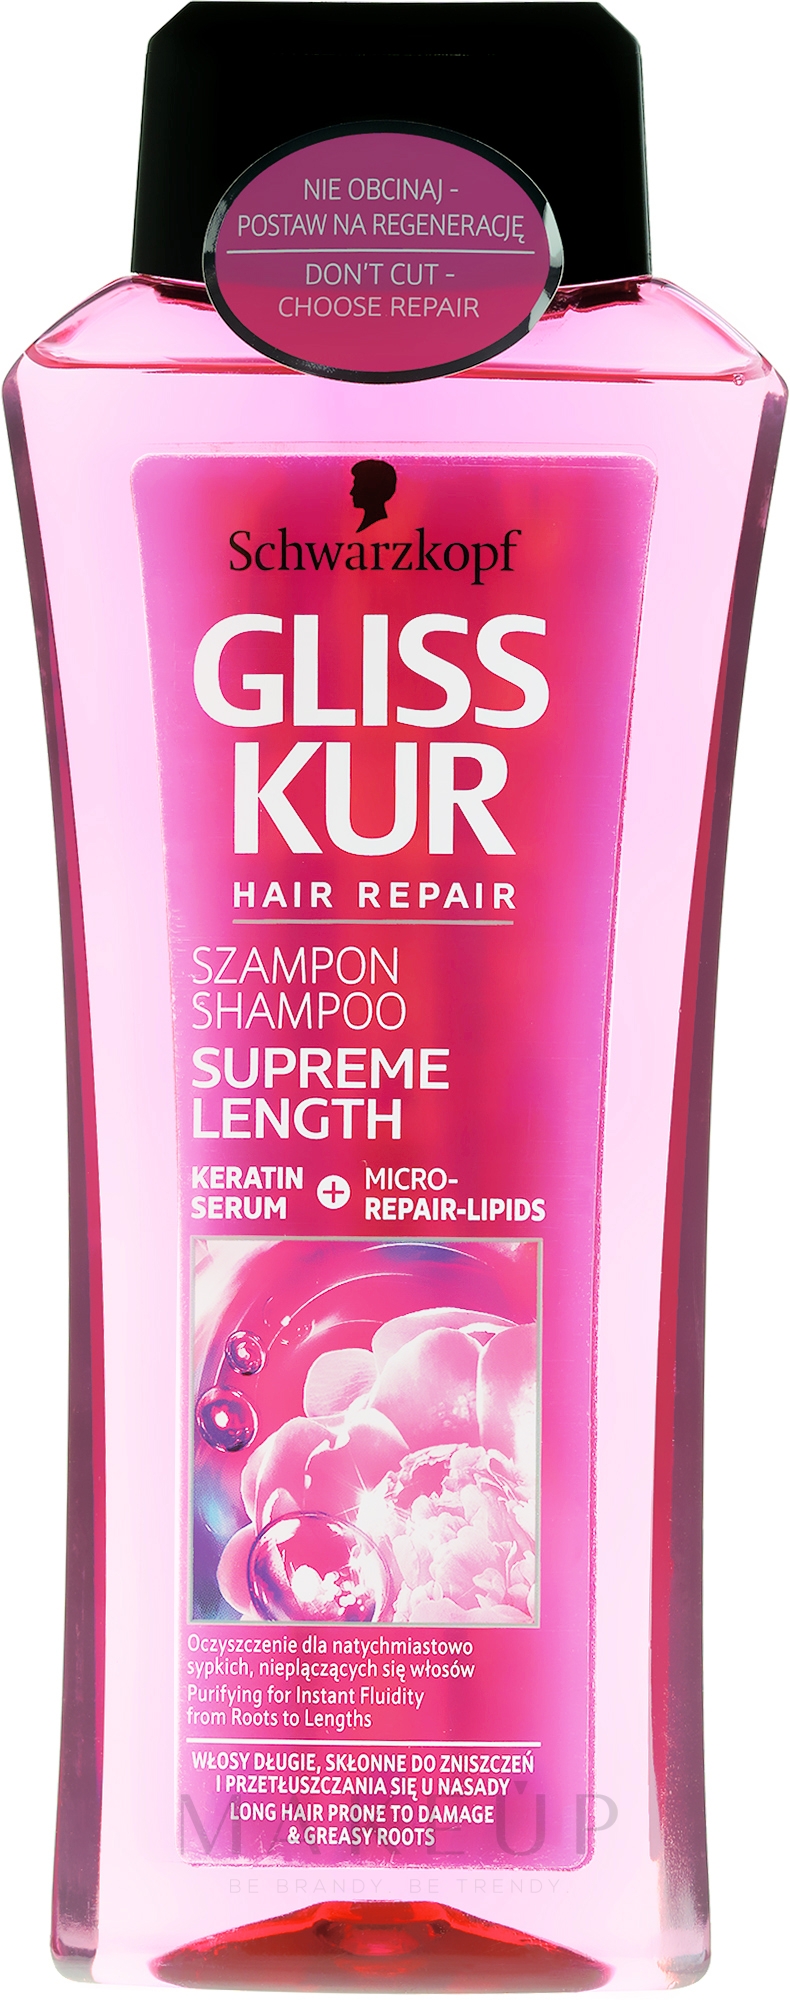 Kräftigendes Shampoo für langes, geschädigtes Haar und fettigen Ansatz - Gliss Kur Supreme Length Shampoo — Foto 250 ml